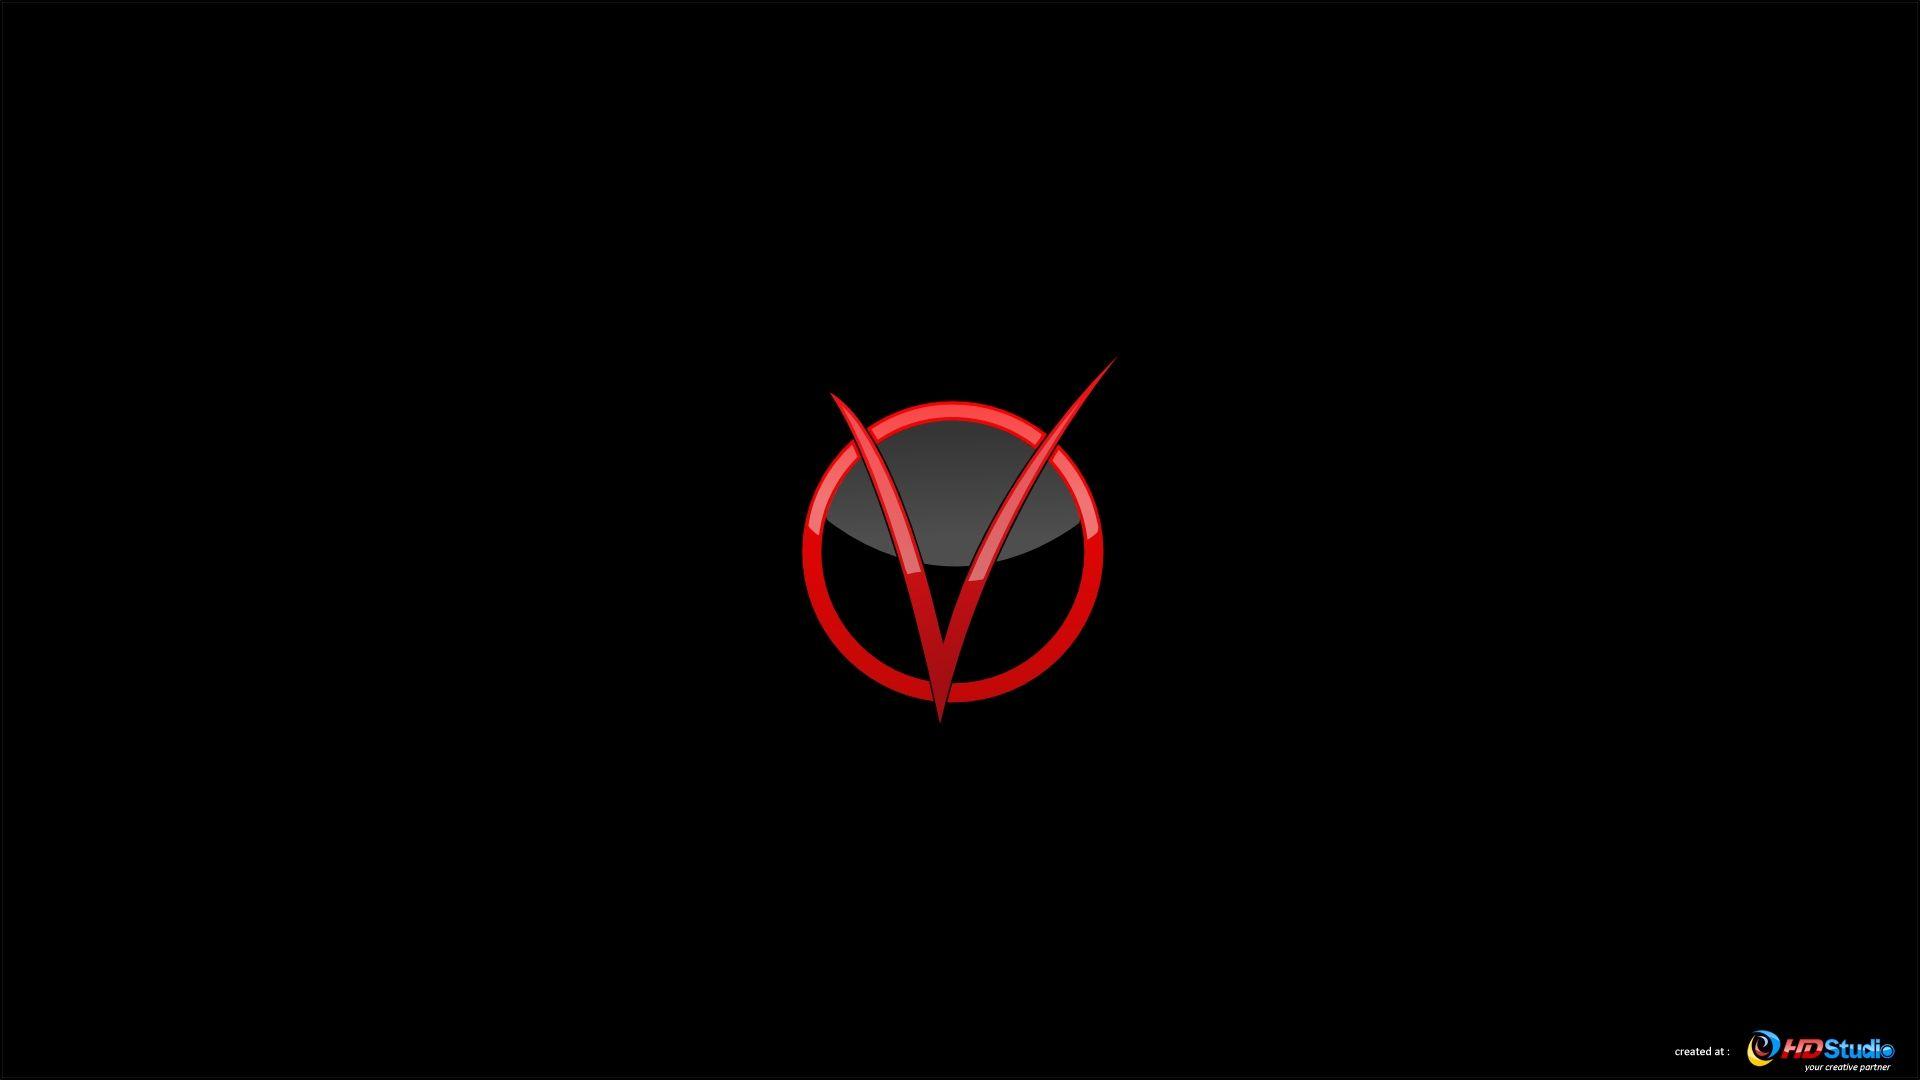 V for Vendetta V Logo - V For Vendetta Wallpaper